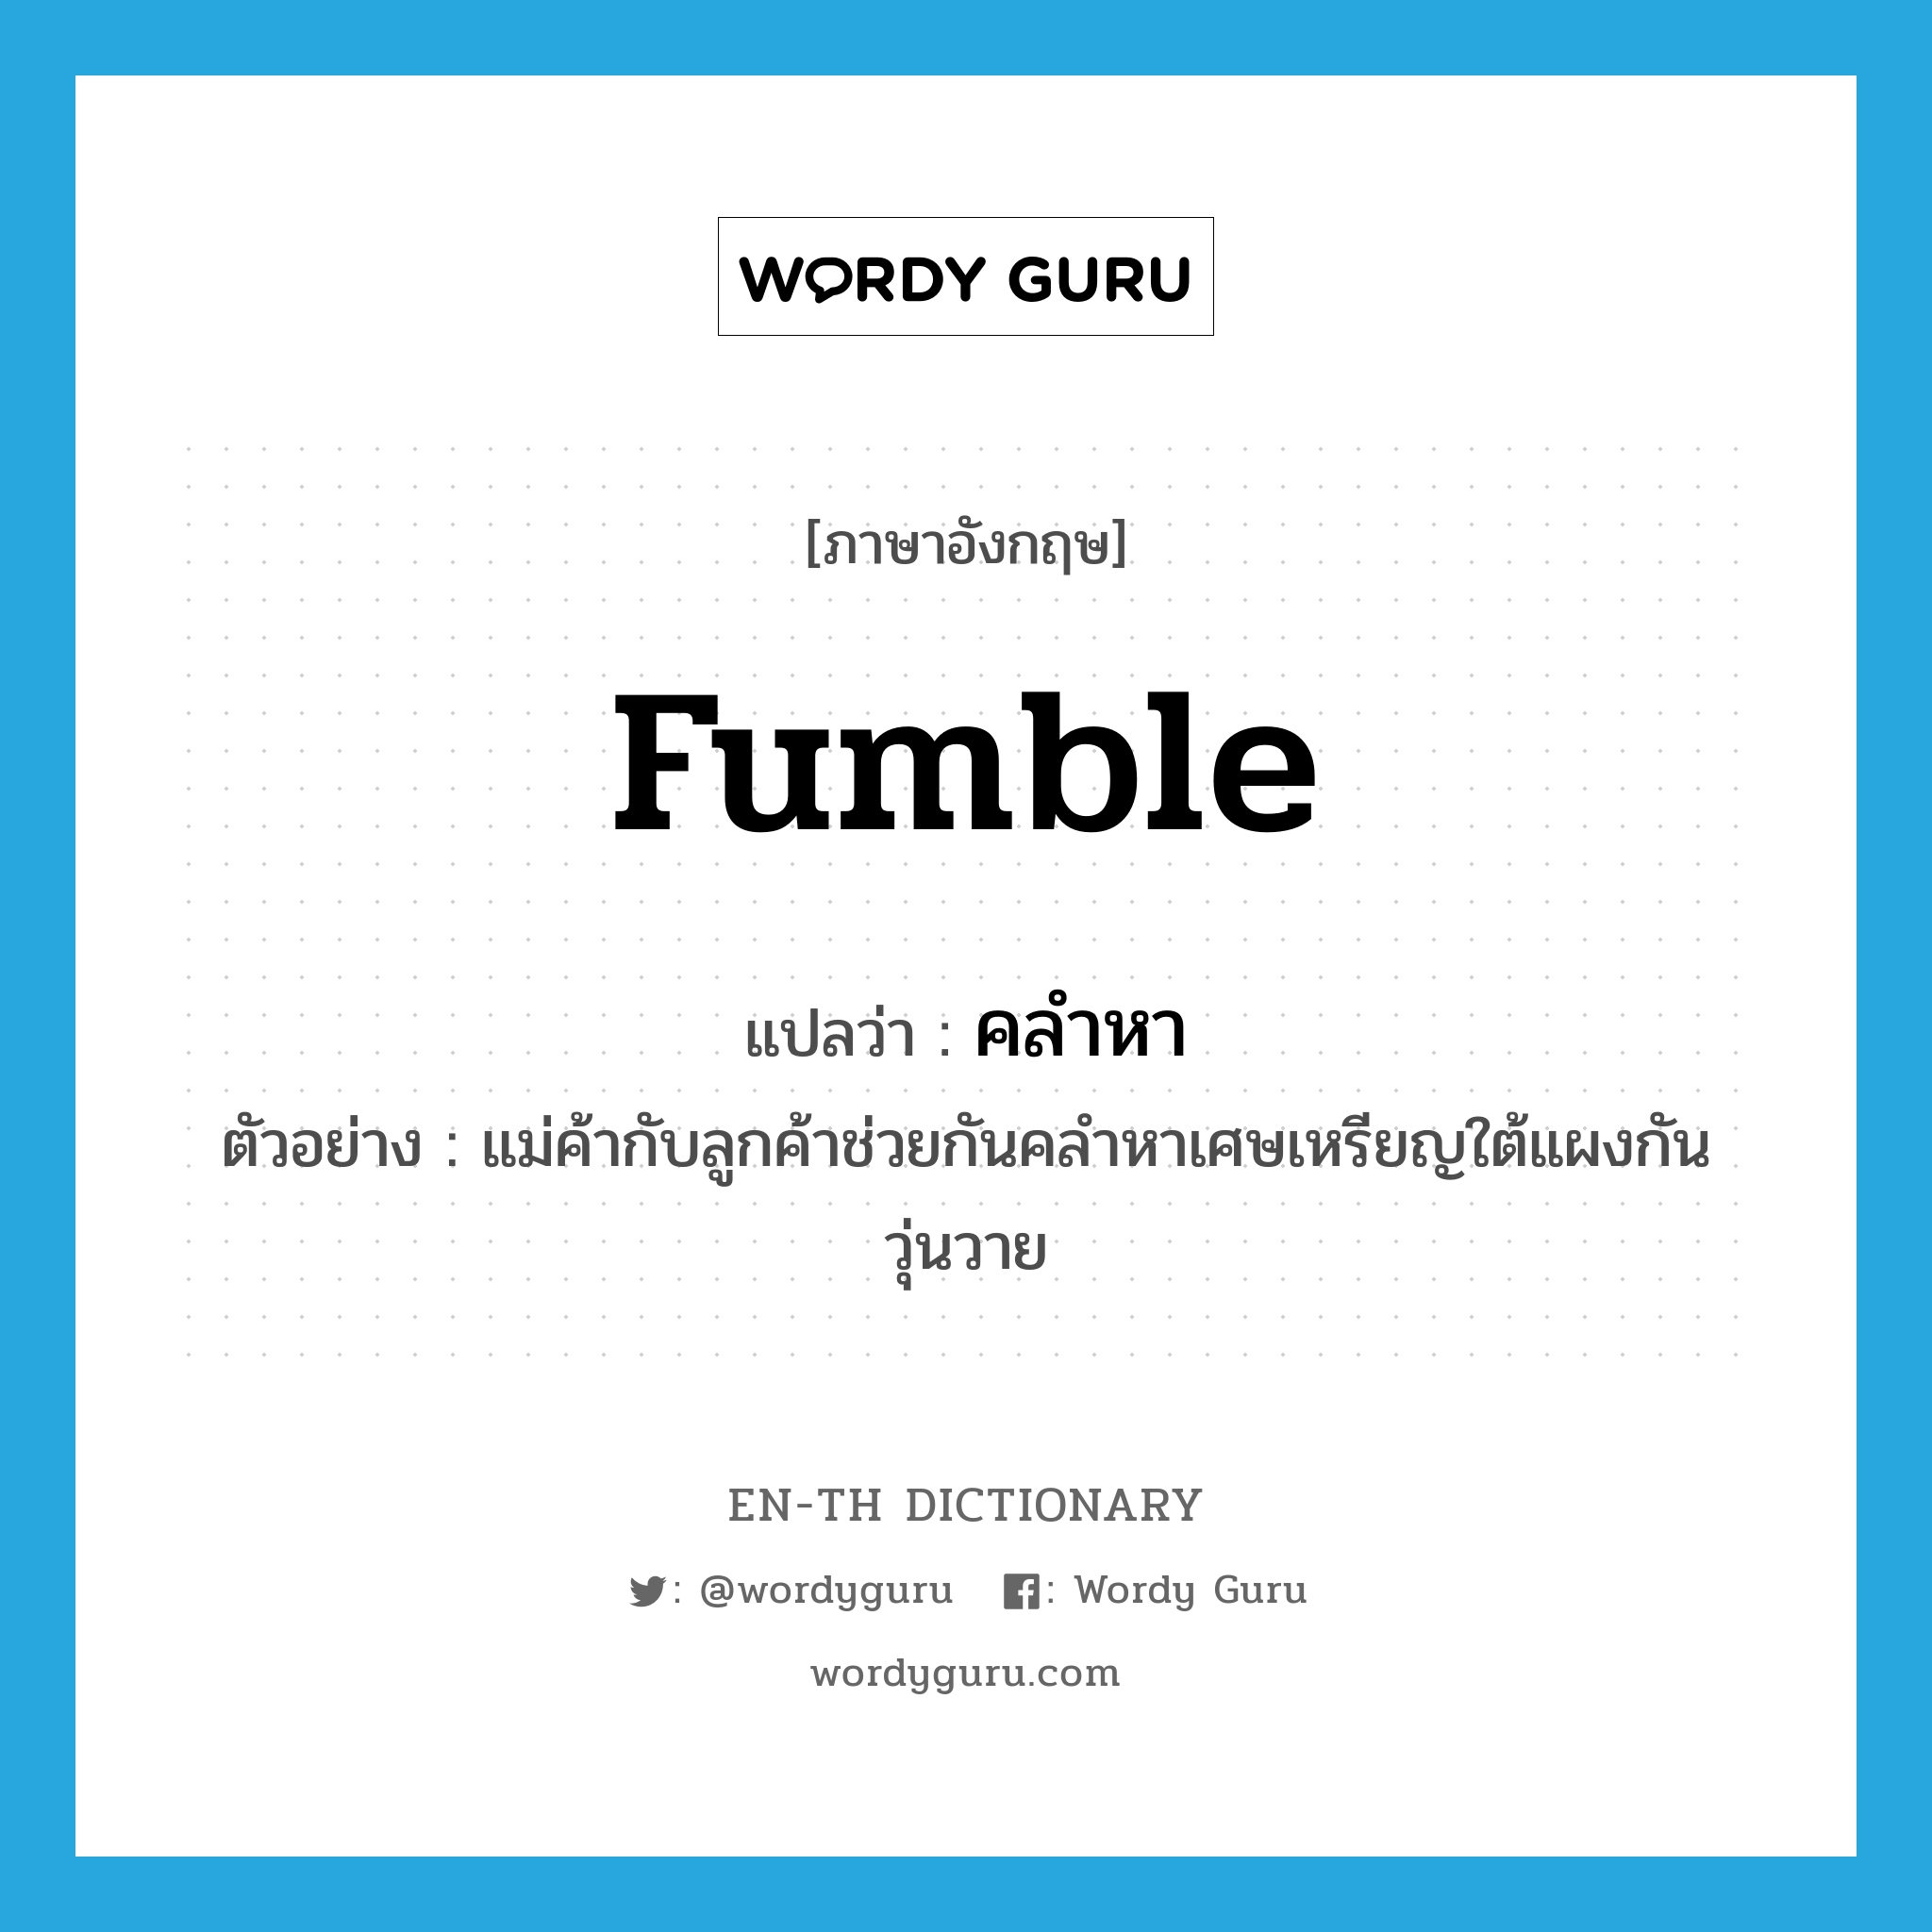 fumble แปลว่า?, คำศัพท์ภาษาอังกฤษ fumble แปลว่า คลำหา ประเภท V ตัวอย่าง แม่ค้ากับลูกค้าช่วยกันคลำหาเศษเหรียญใต้แผงกันวุ่นวาย หมวด V